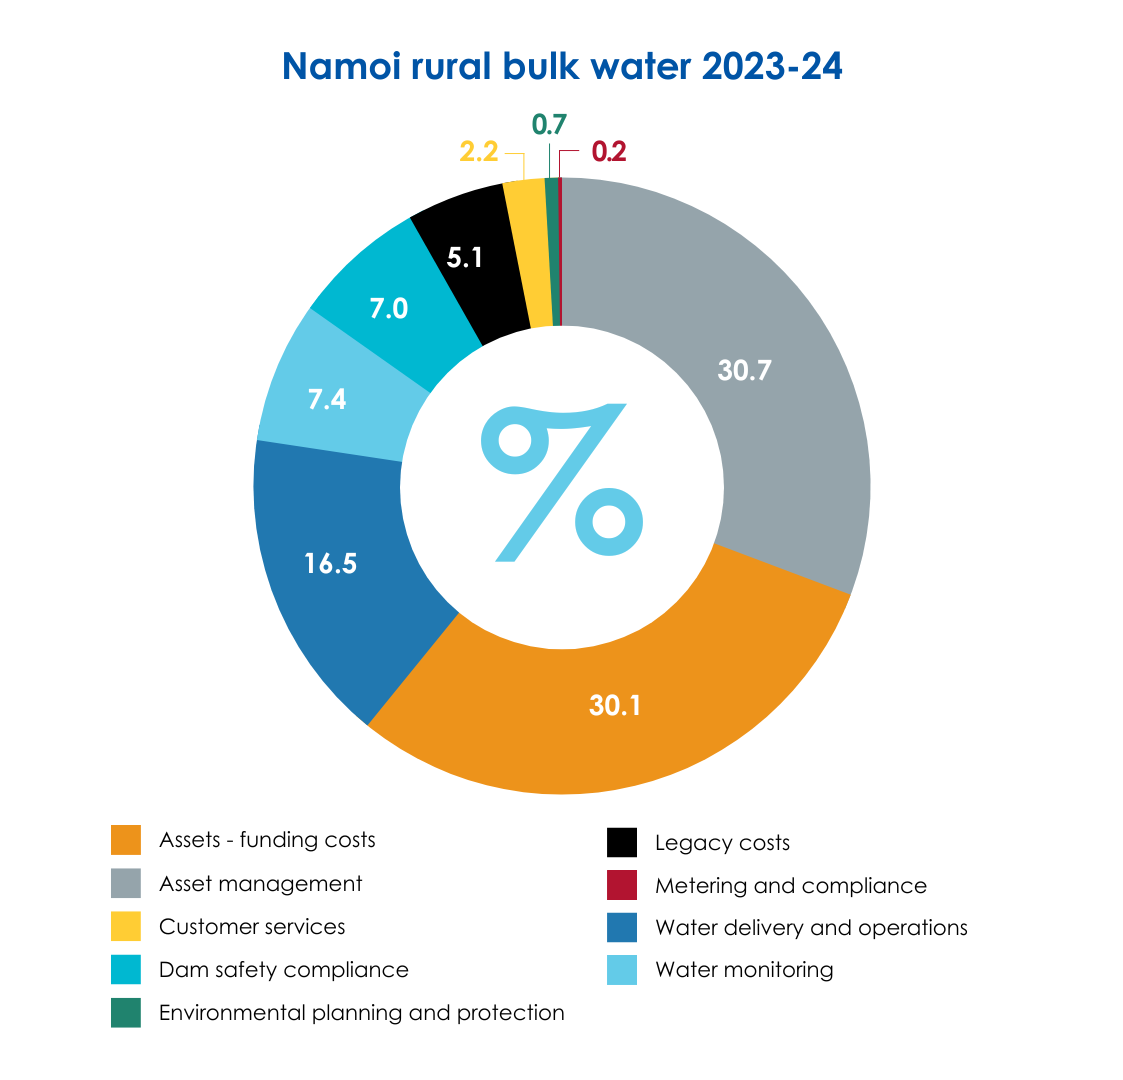 Namoi rural bulk water 2023-24